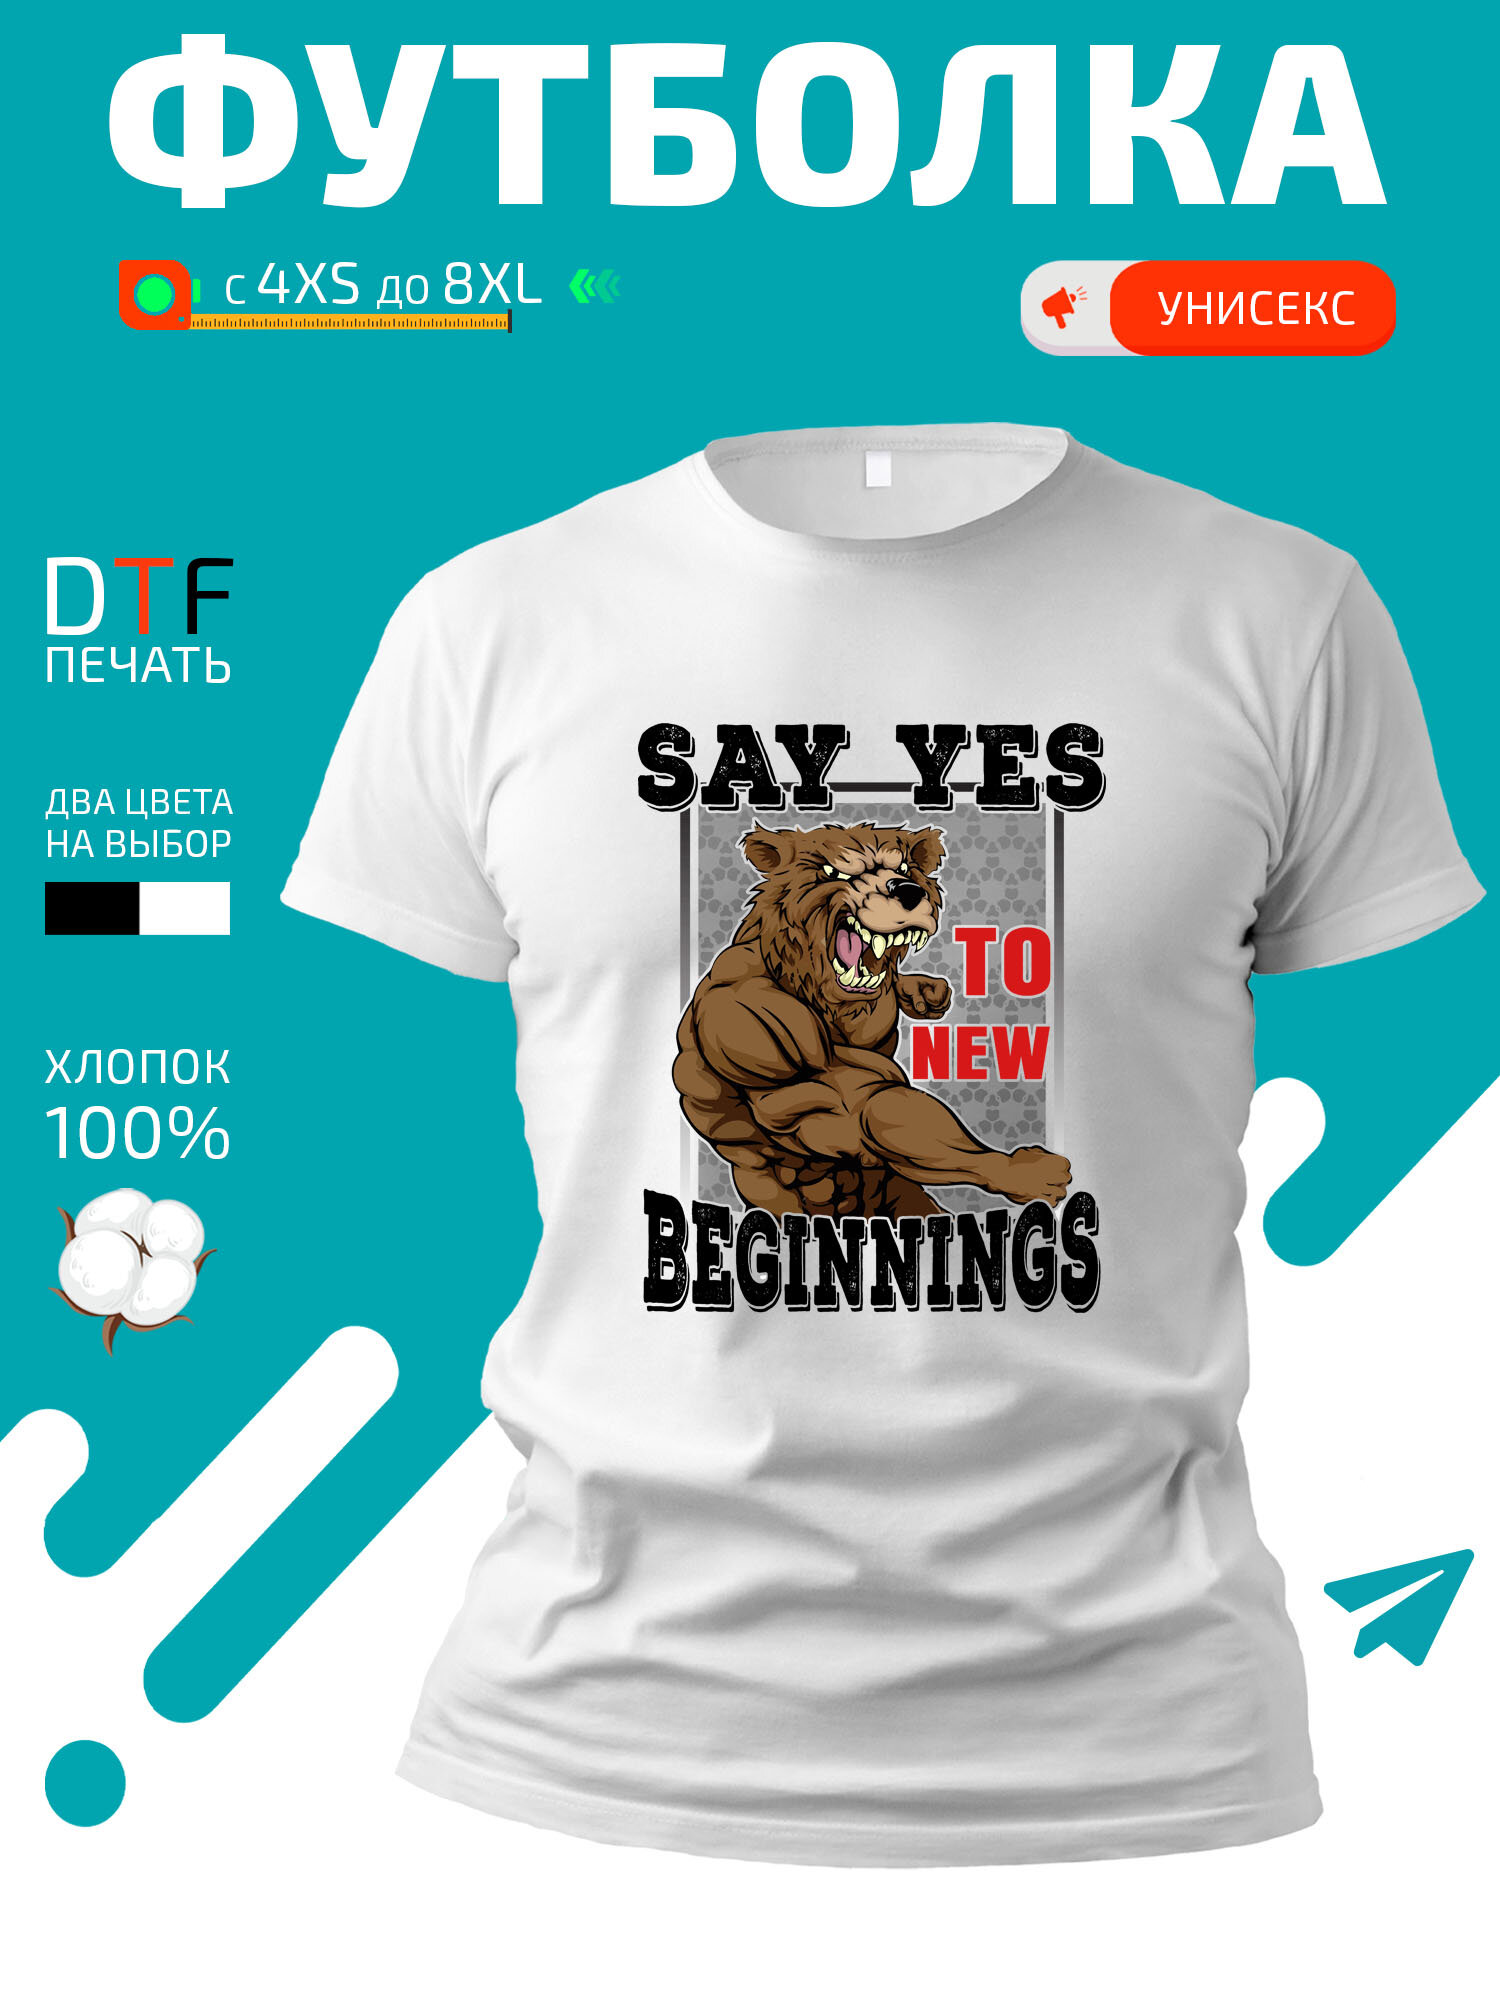 Футболка Say yes to new beginning-Скажи да новым начинаниям накаченный медведь